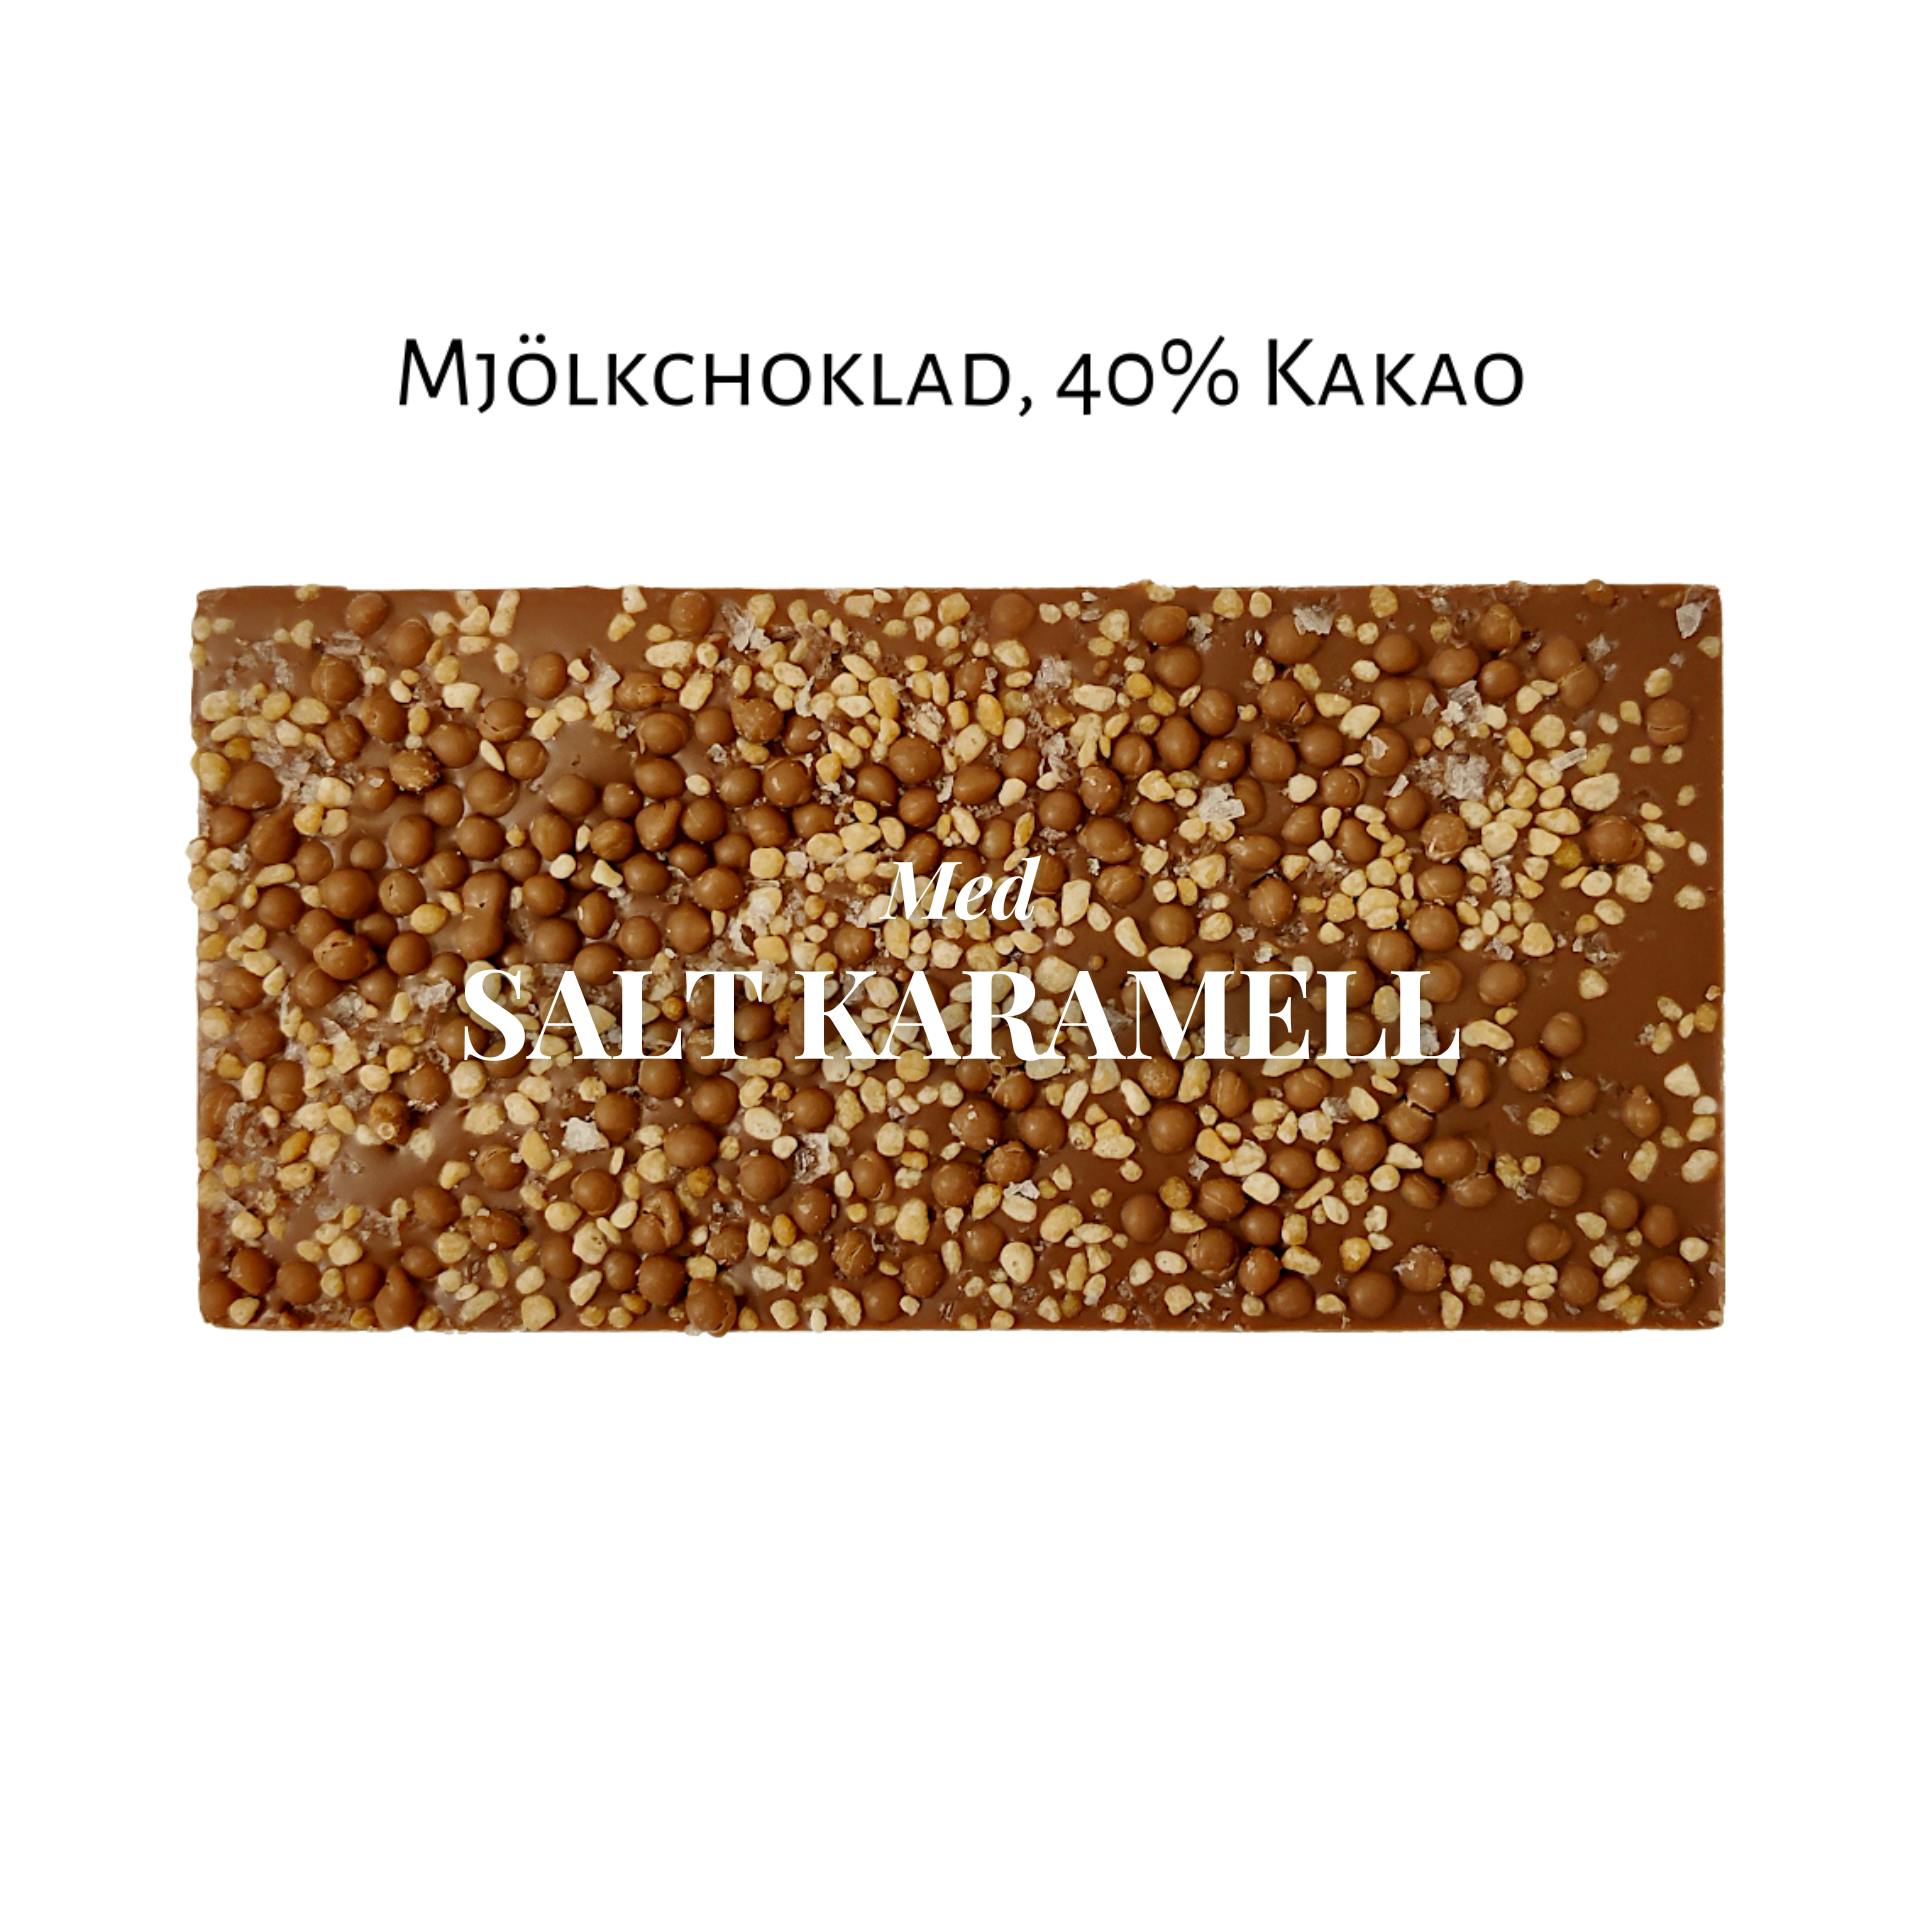 40% Mjölkchoklad - Salt Karamell 100g (x 10st)